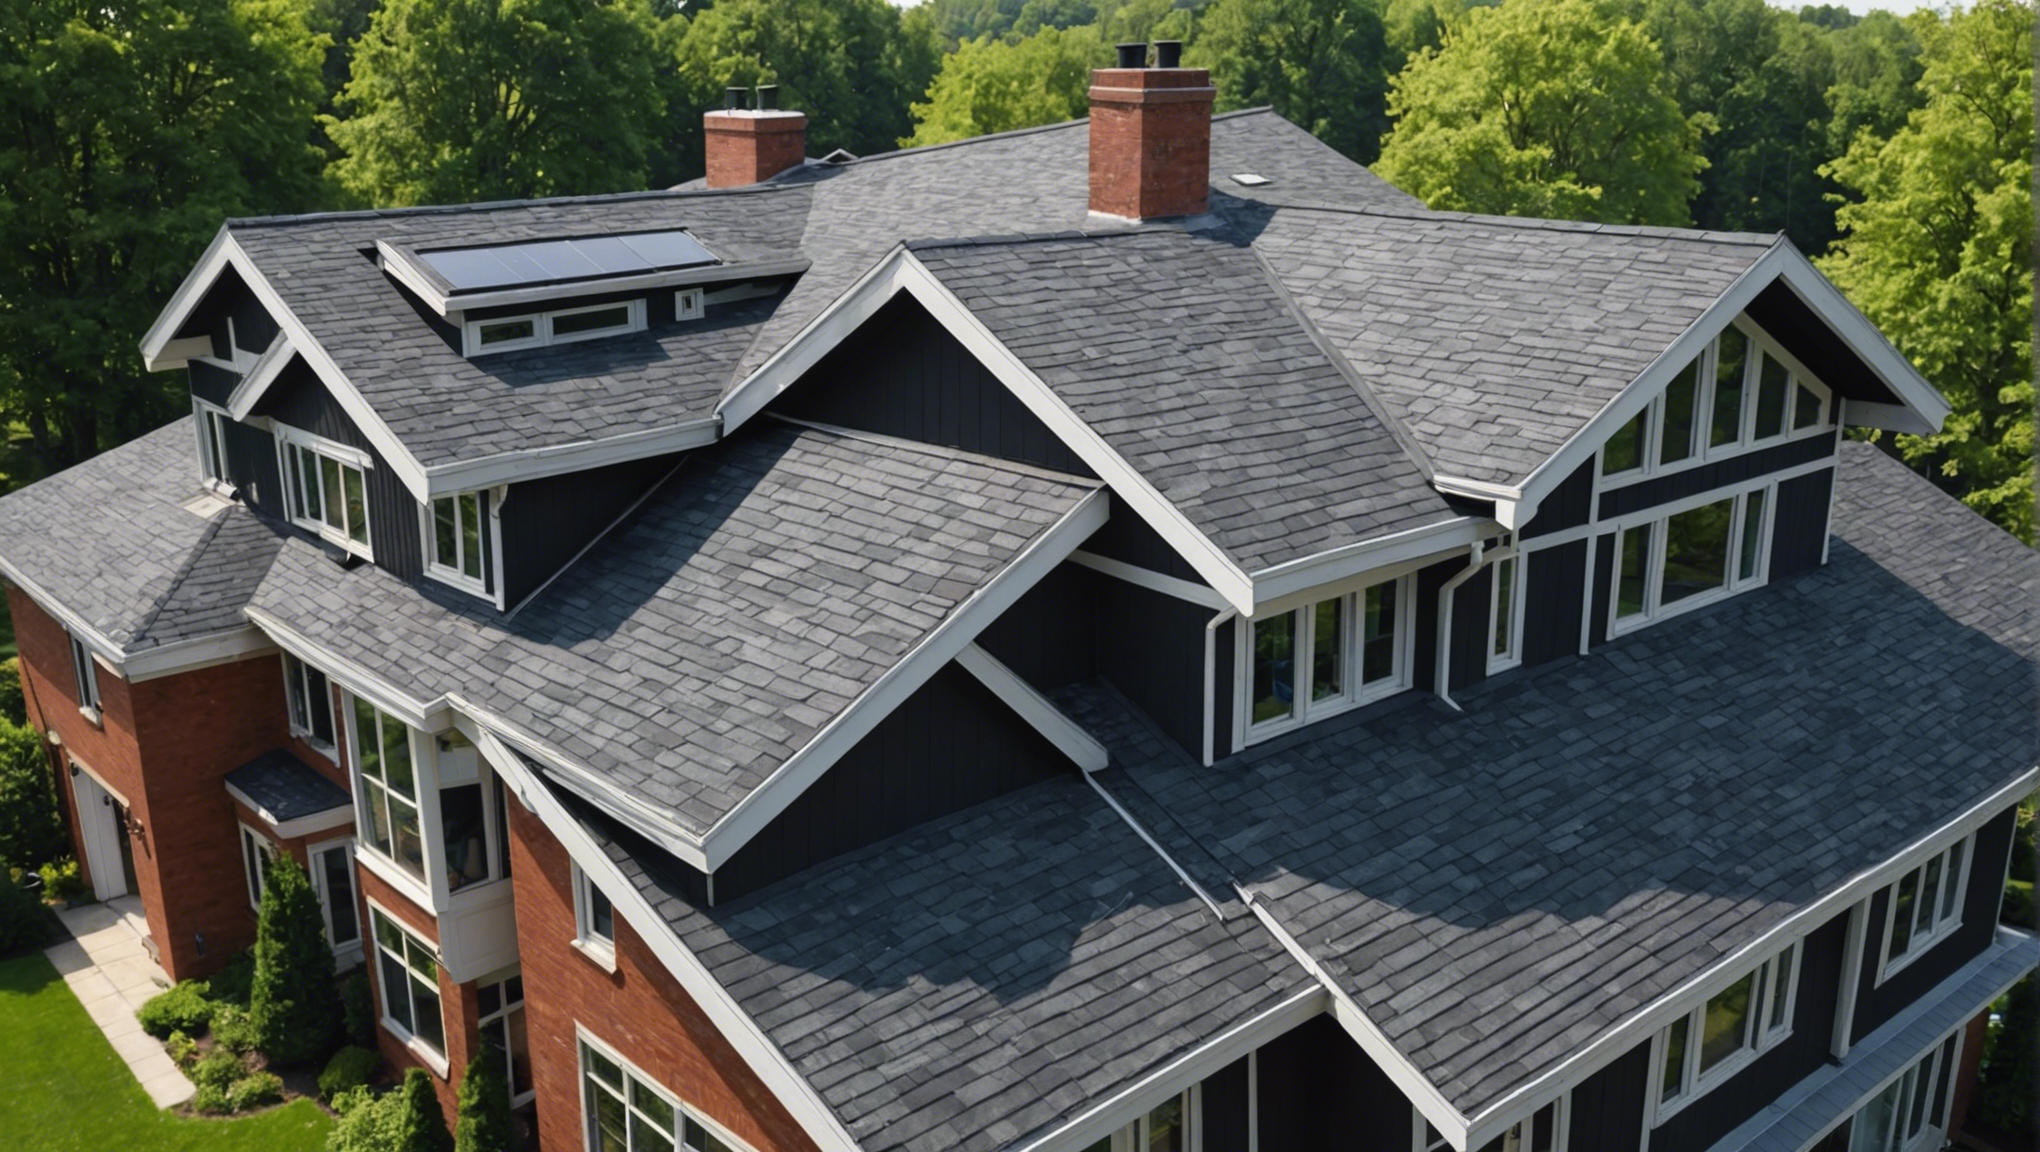 découvrez nos conseils et astuces pour améliorer l'isolation de votre toiture et optimiser l'efficacité énergétique de votre maison.